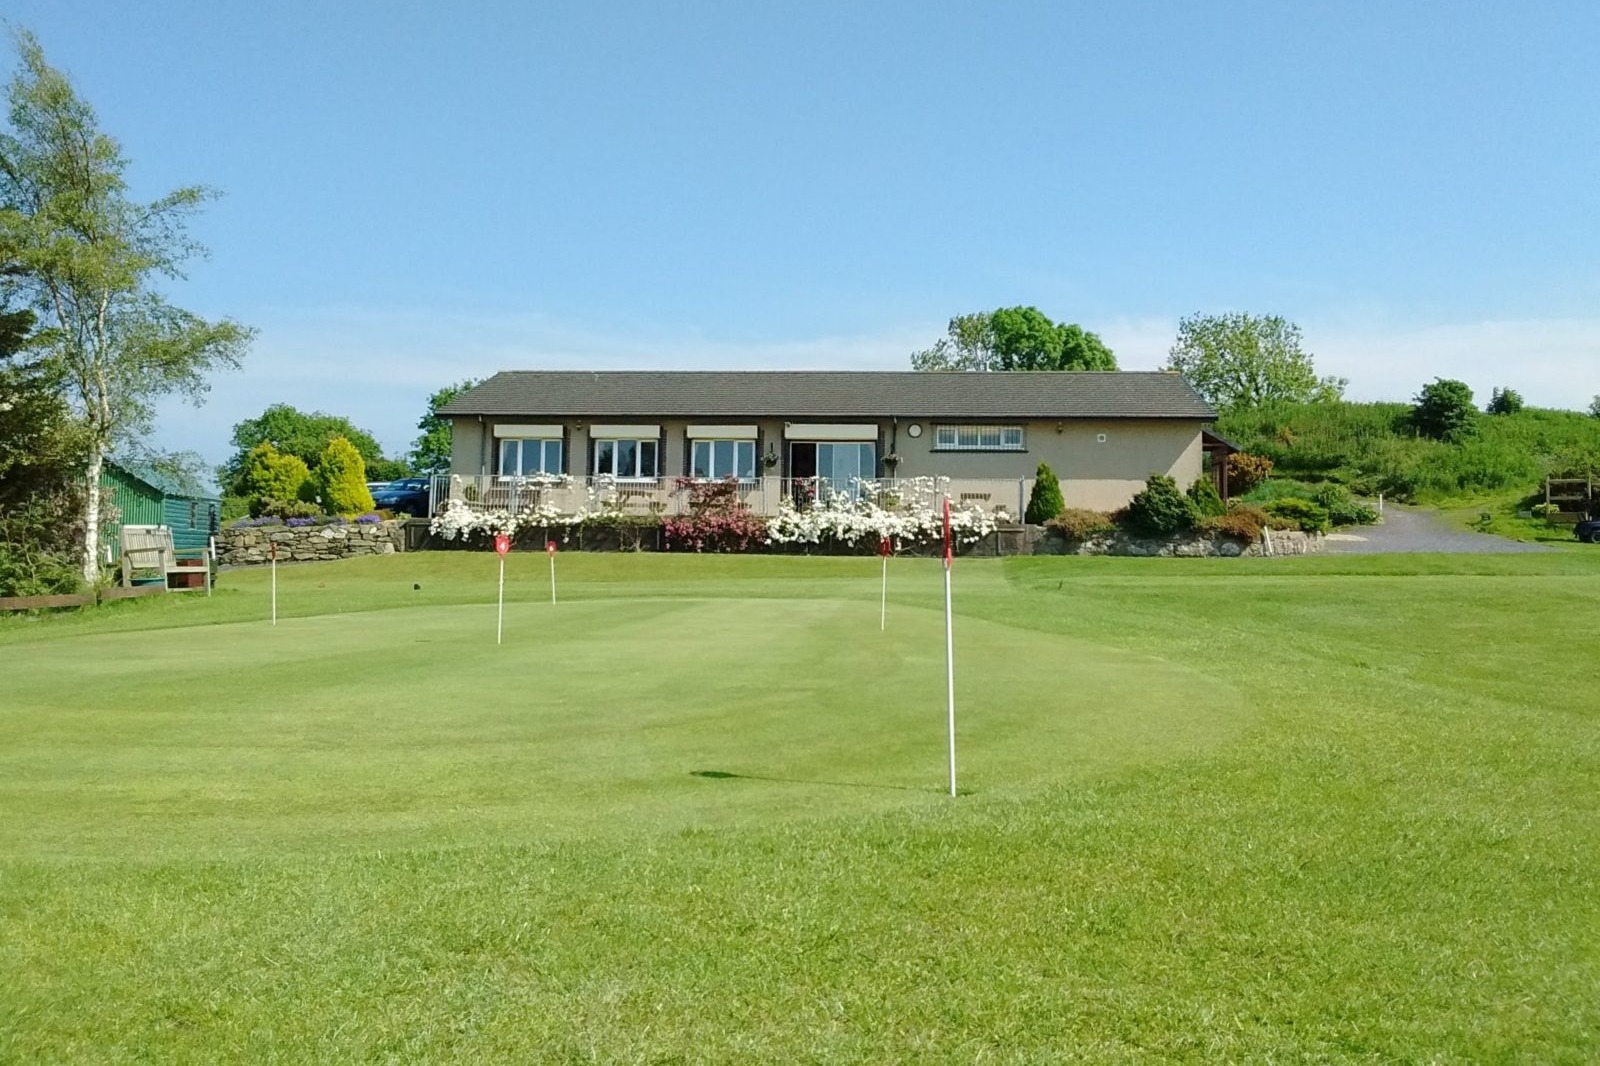 Baron Hill Golf Club